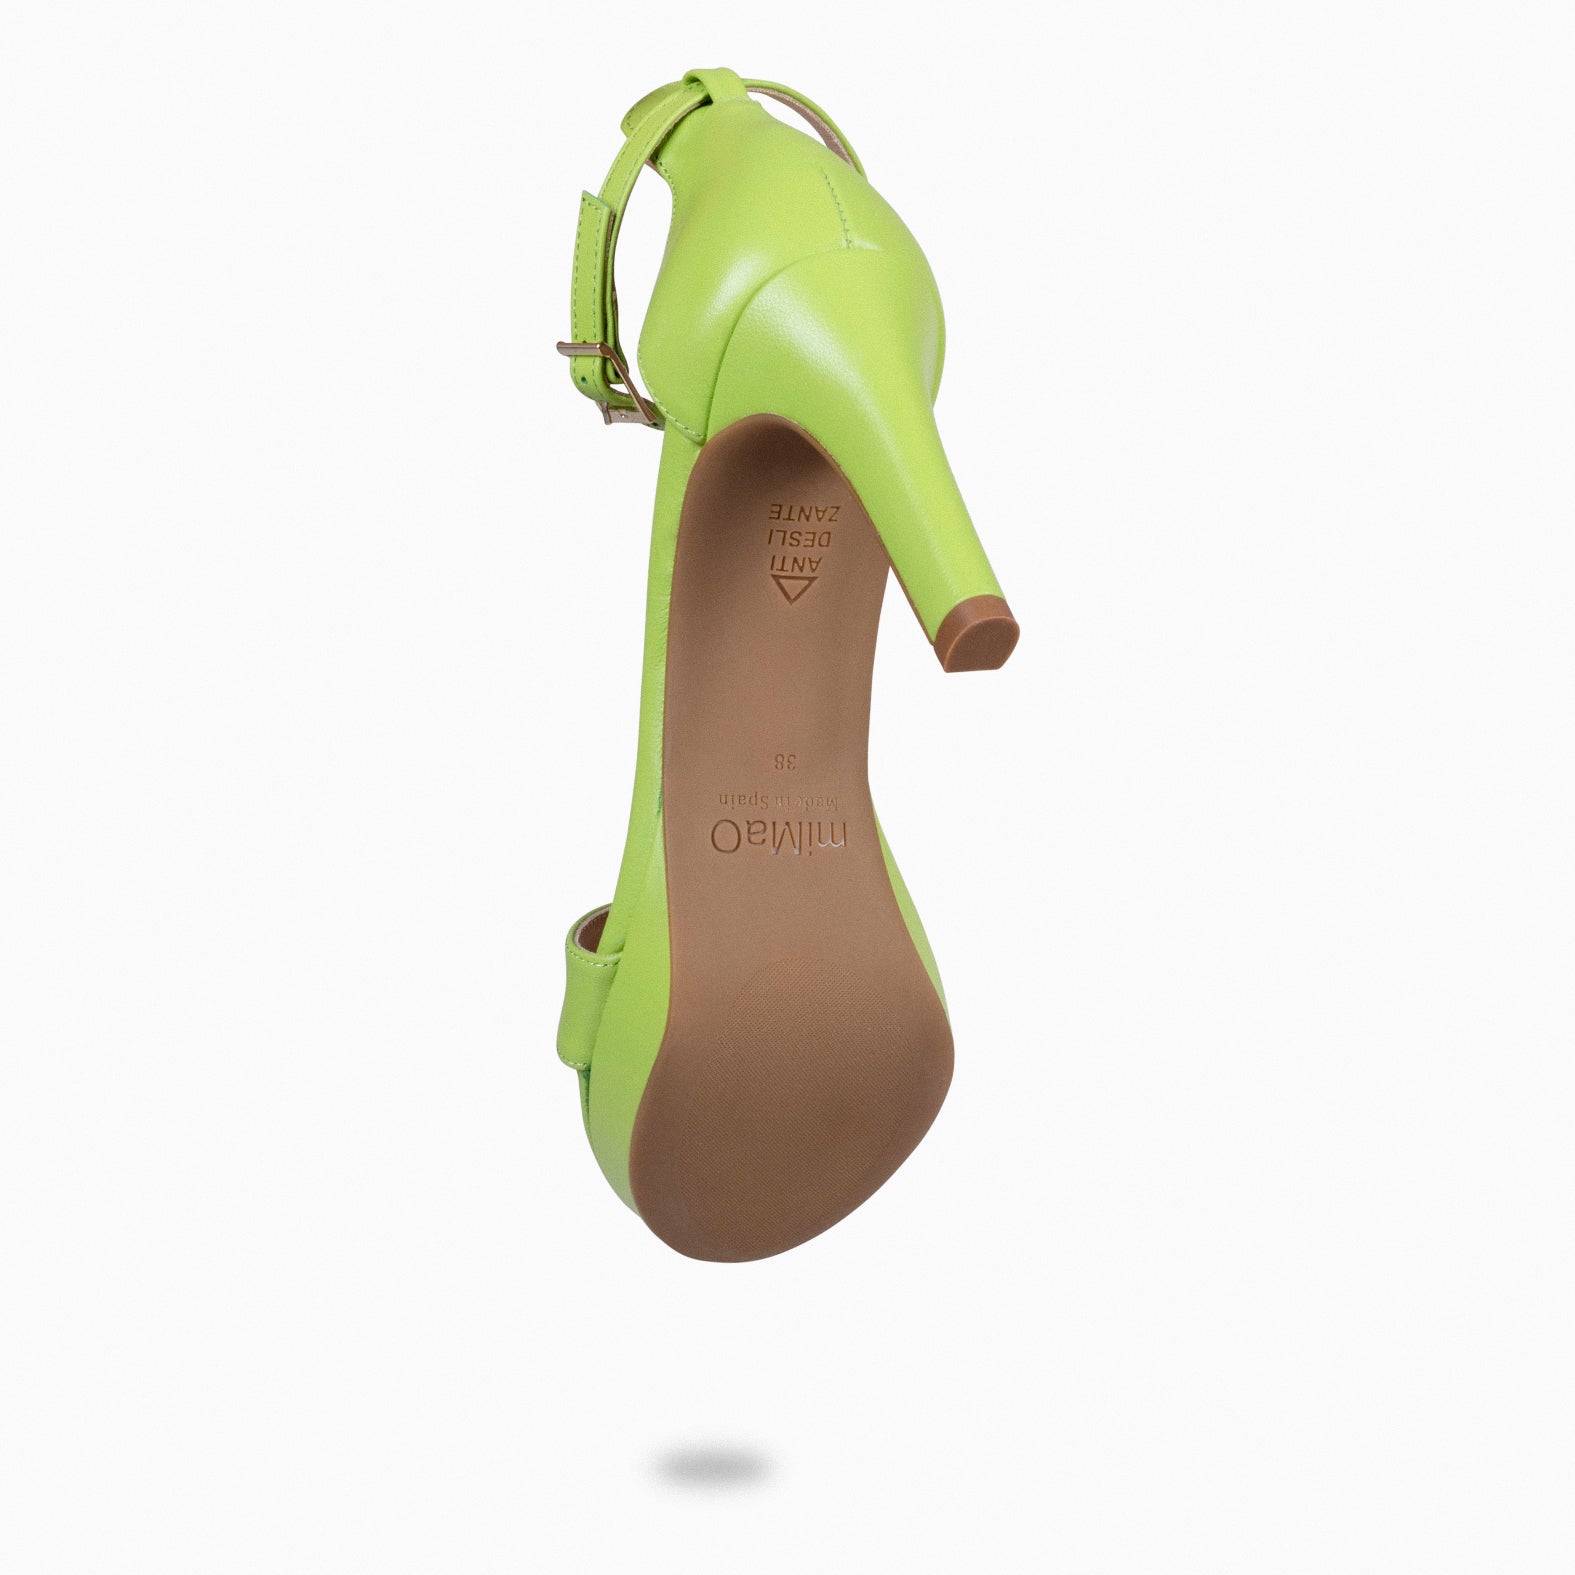 PARTY – GREEN high-heeled platform sandals